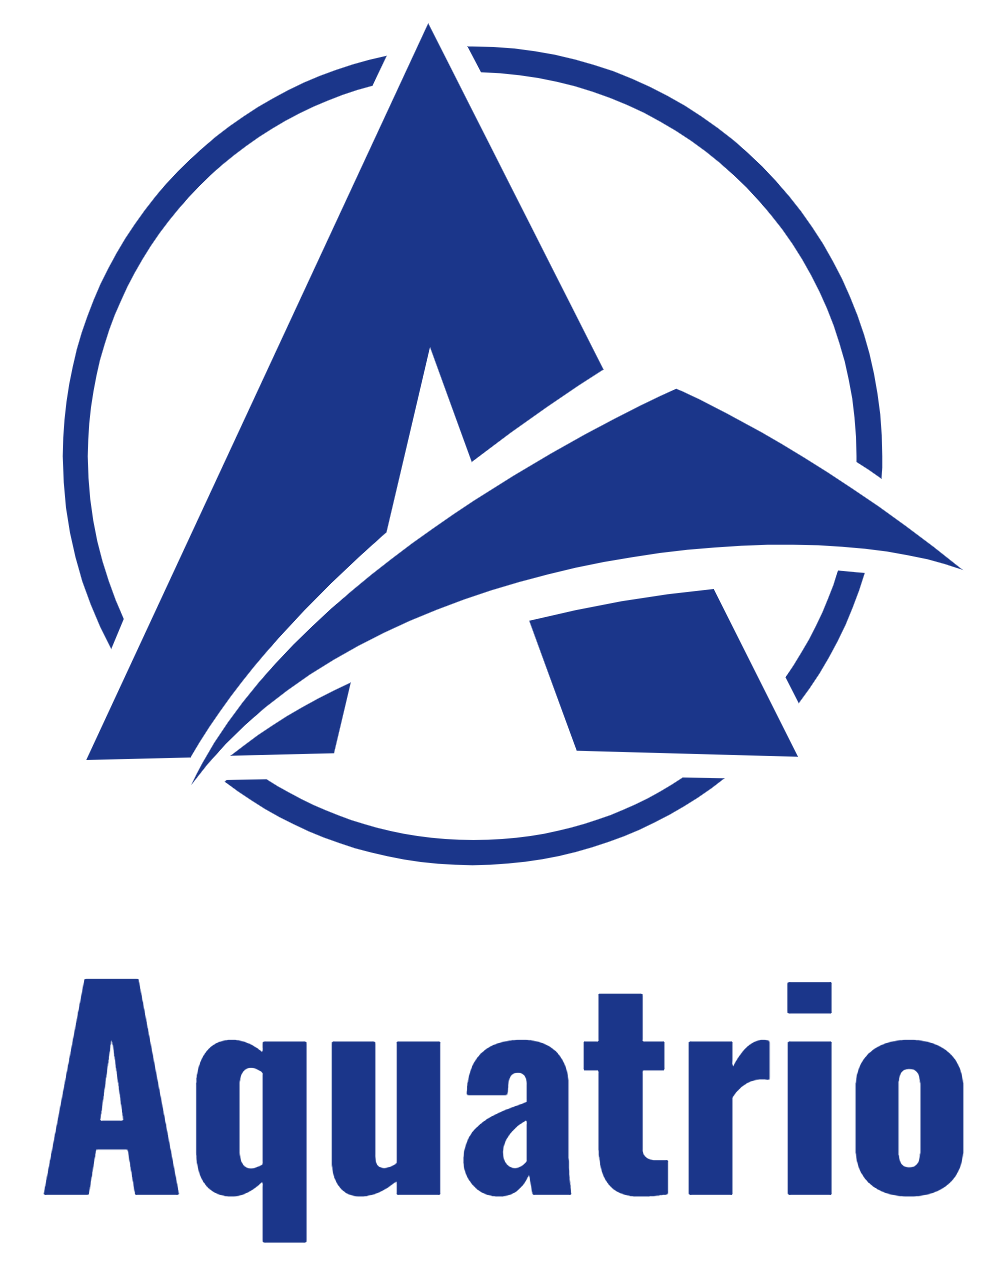 Aquatrio